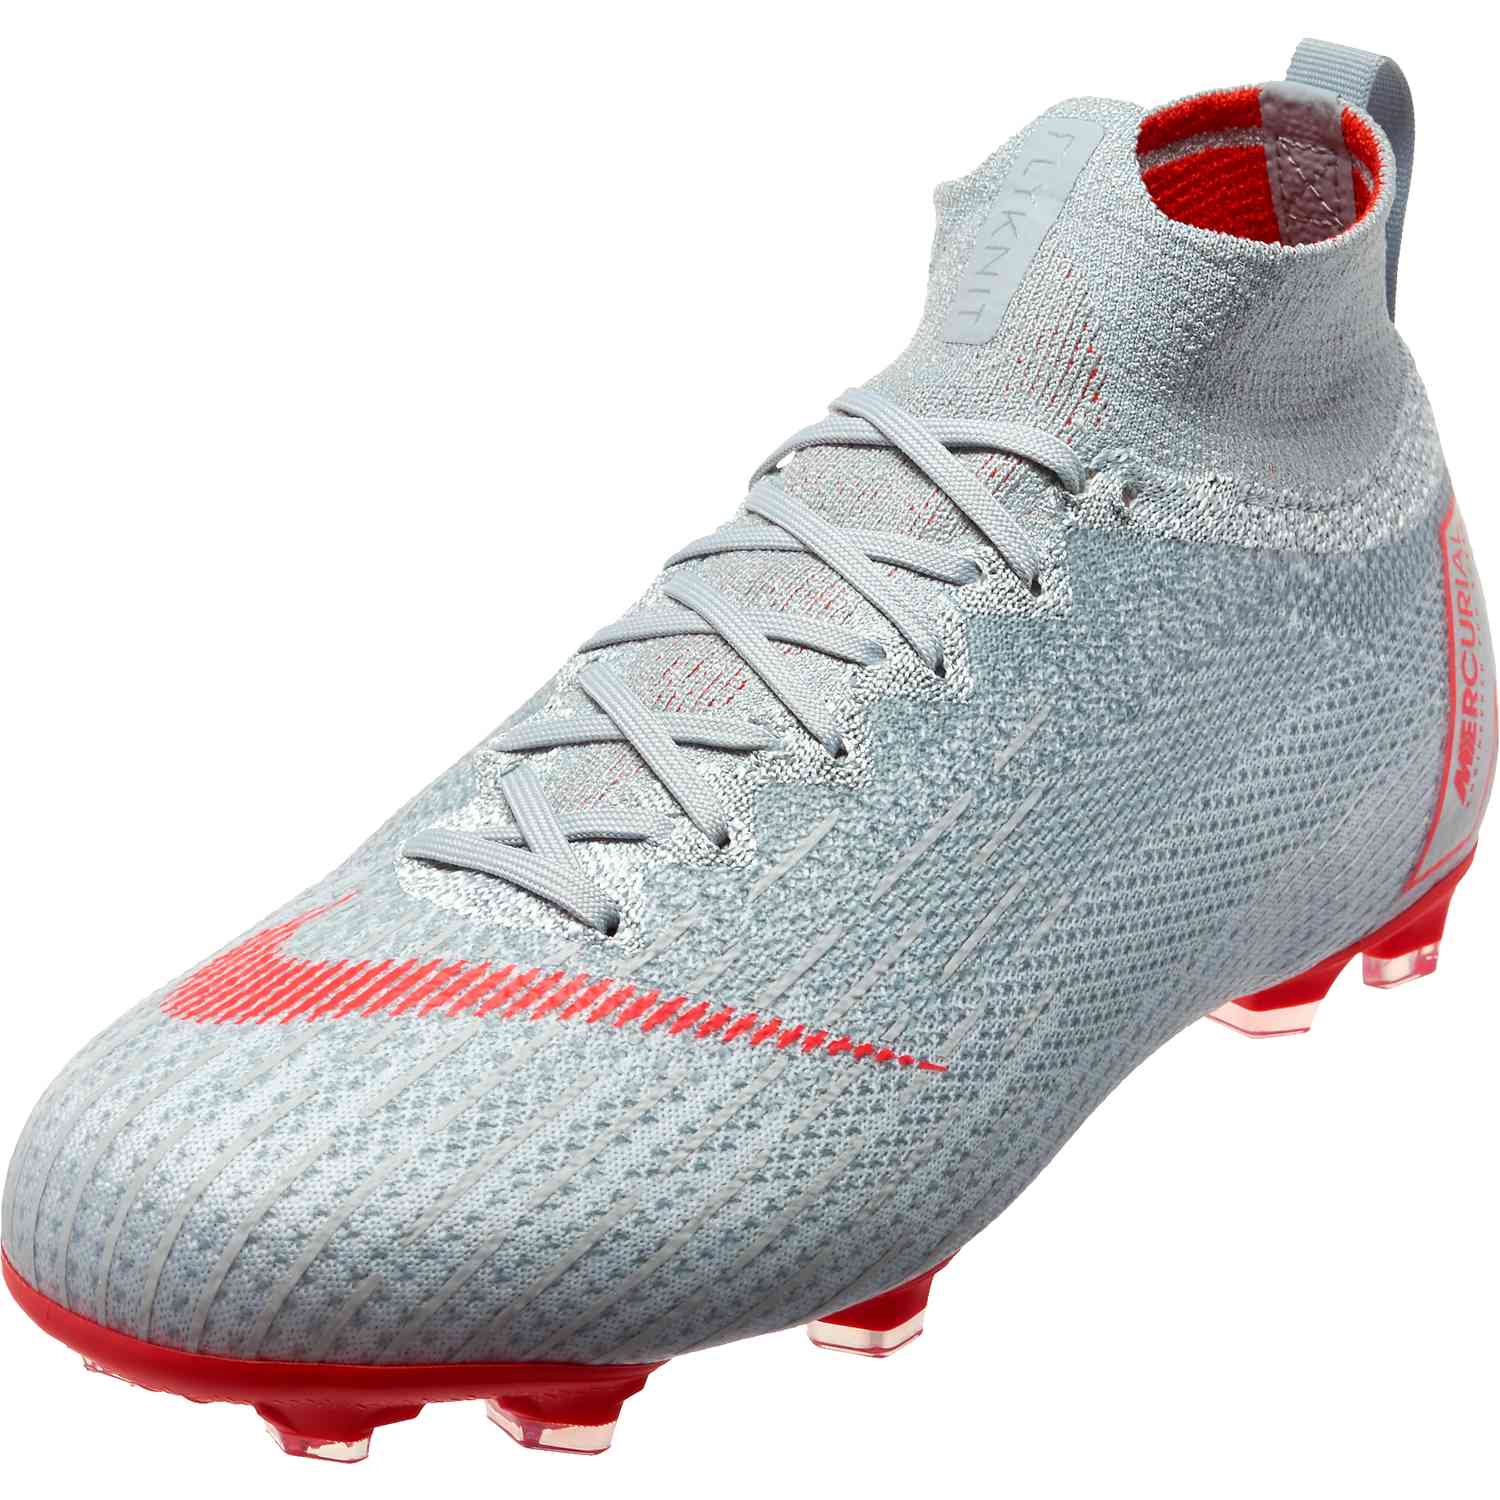 Football shoes Nike JR SUPERFLY 6 ELITE CR7 FG.